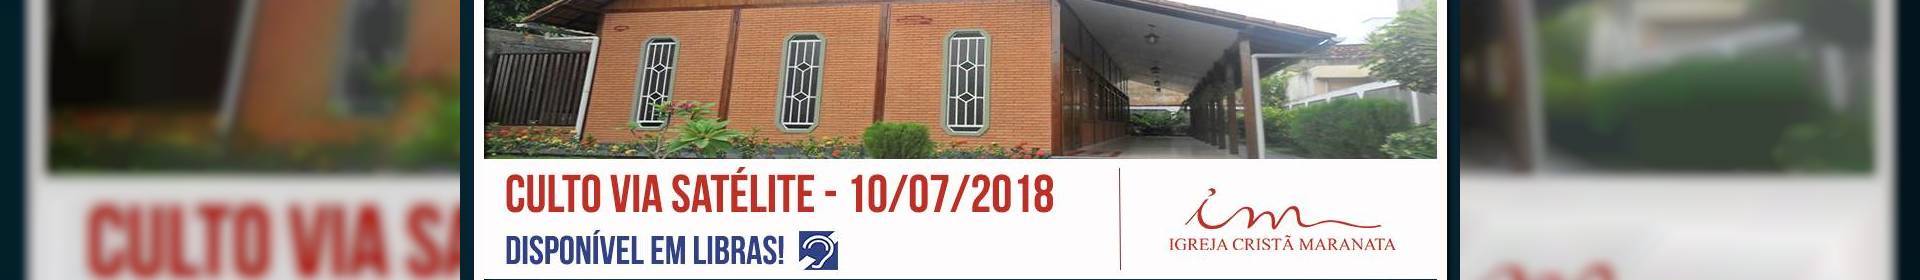 Culto via satélite da Igreja Cristã Maranata - 10/07/2018